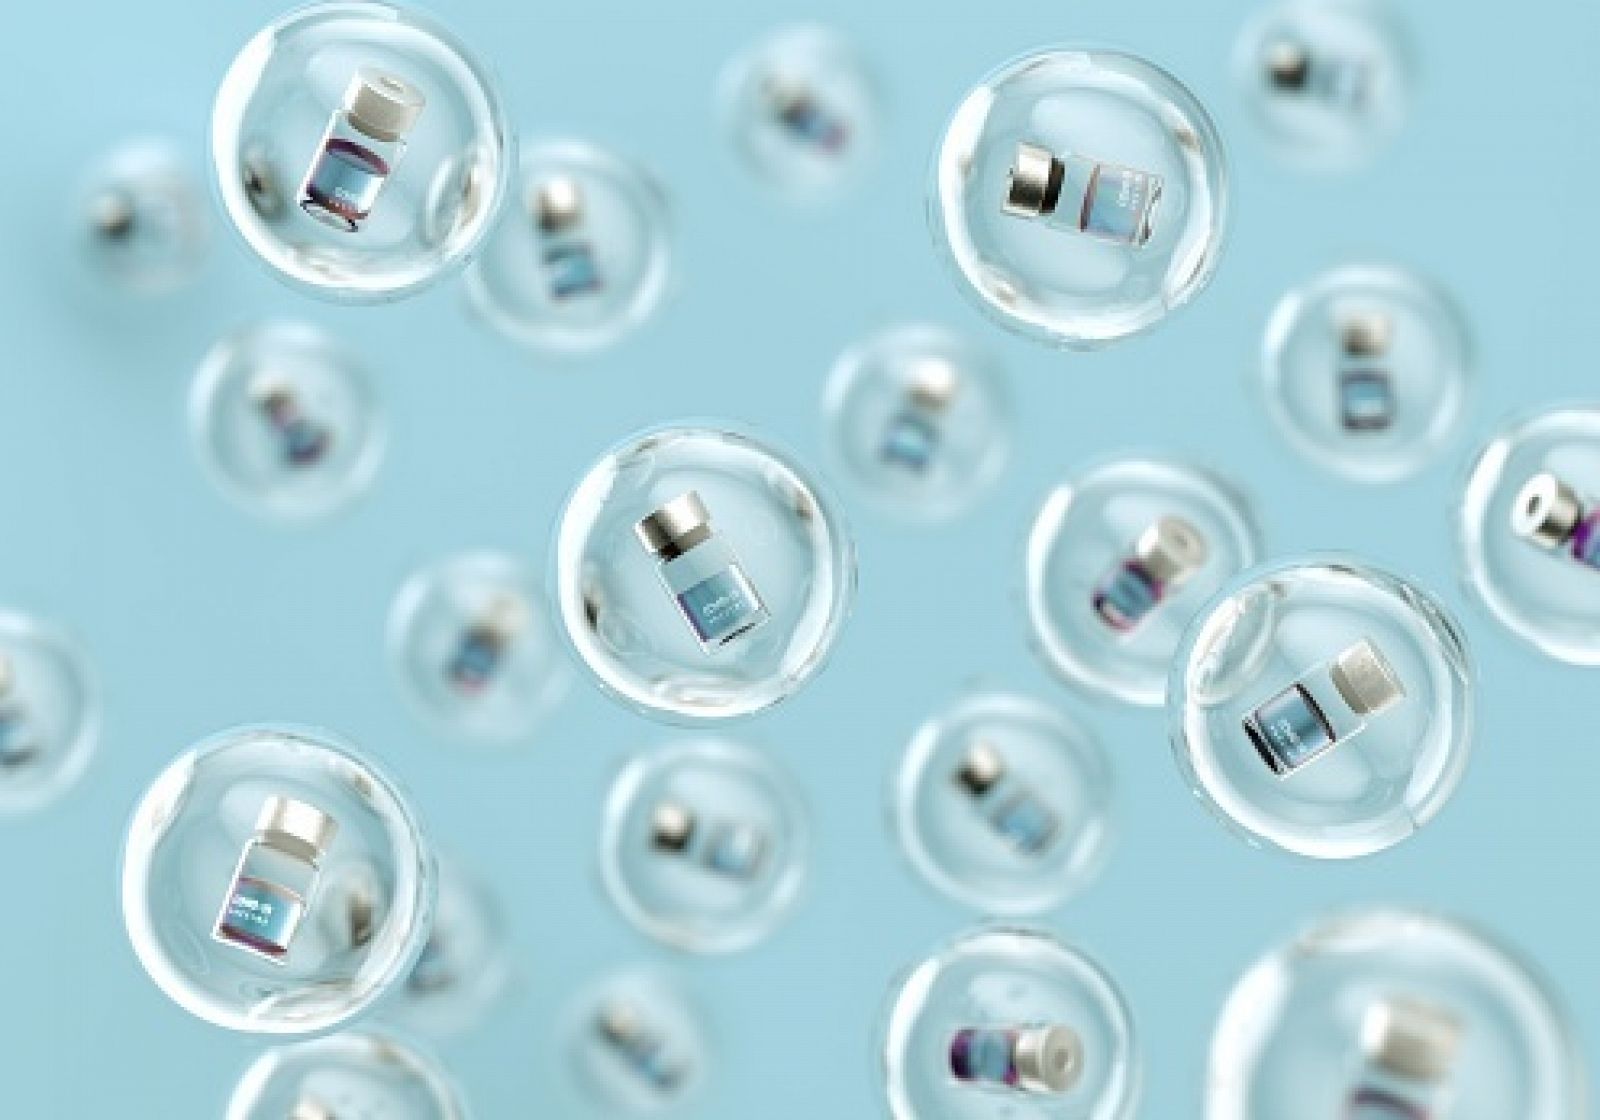 Imagen de generación digital con dosis de la vacuna contra el coronavirus dentro de burbujas